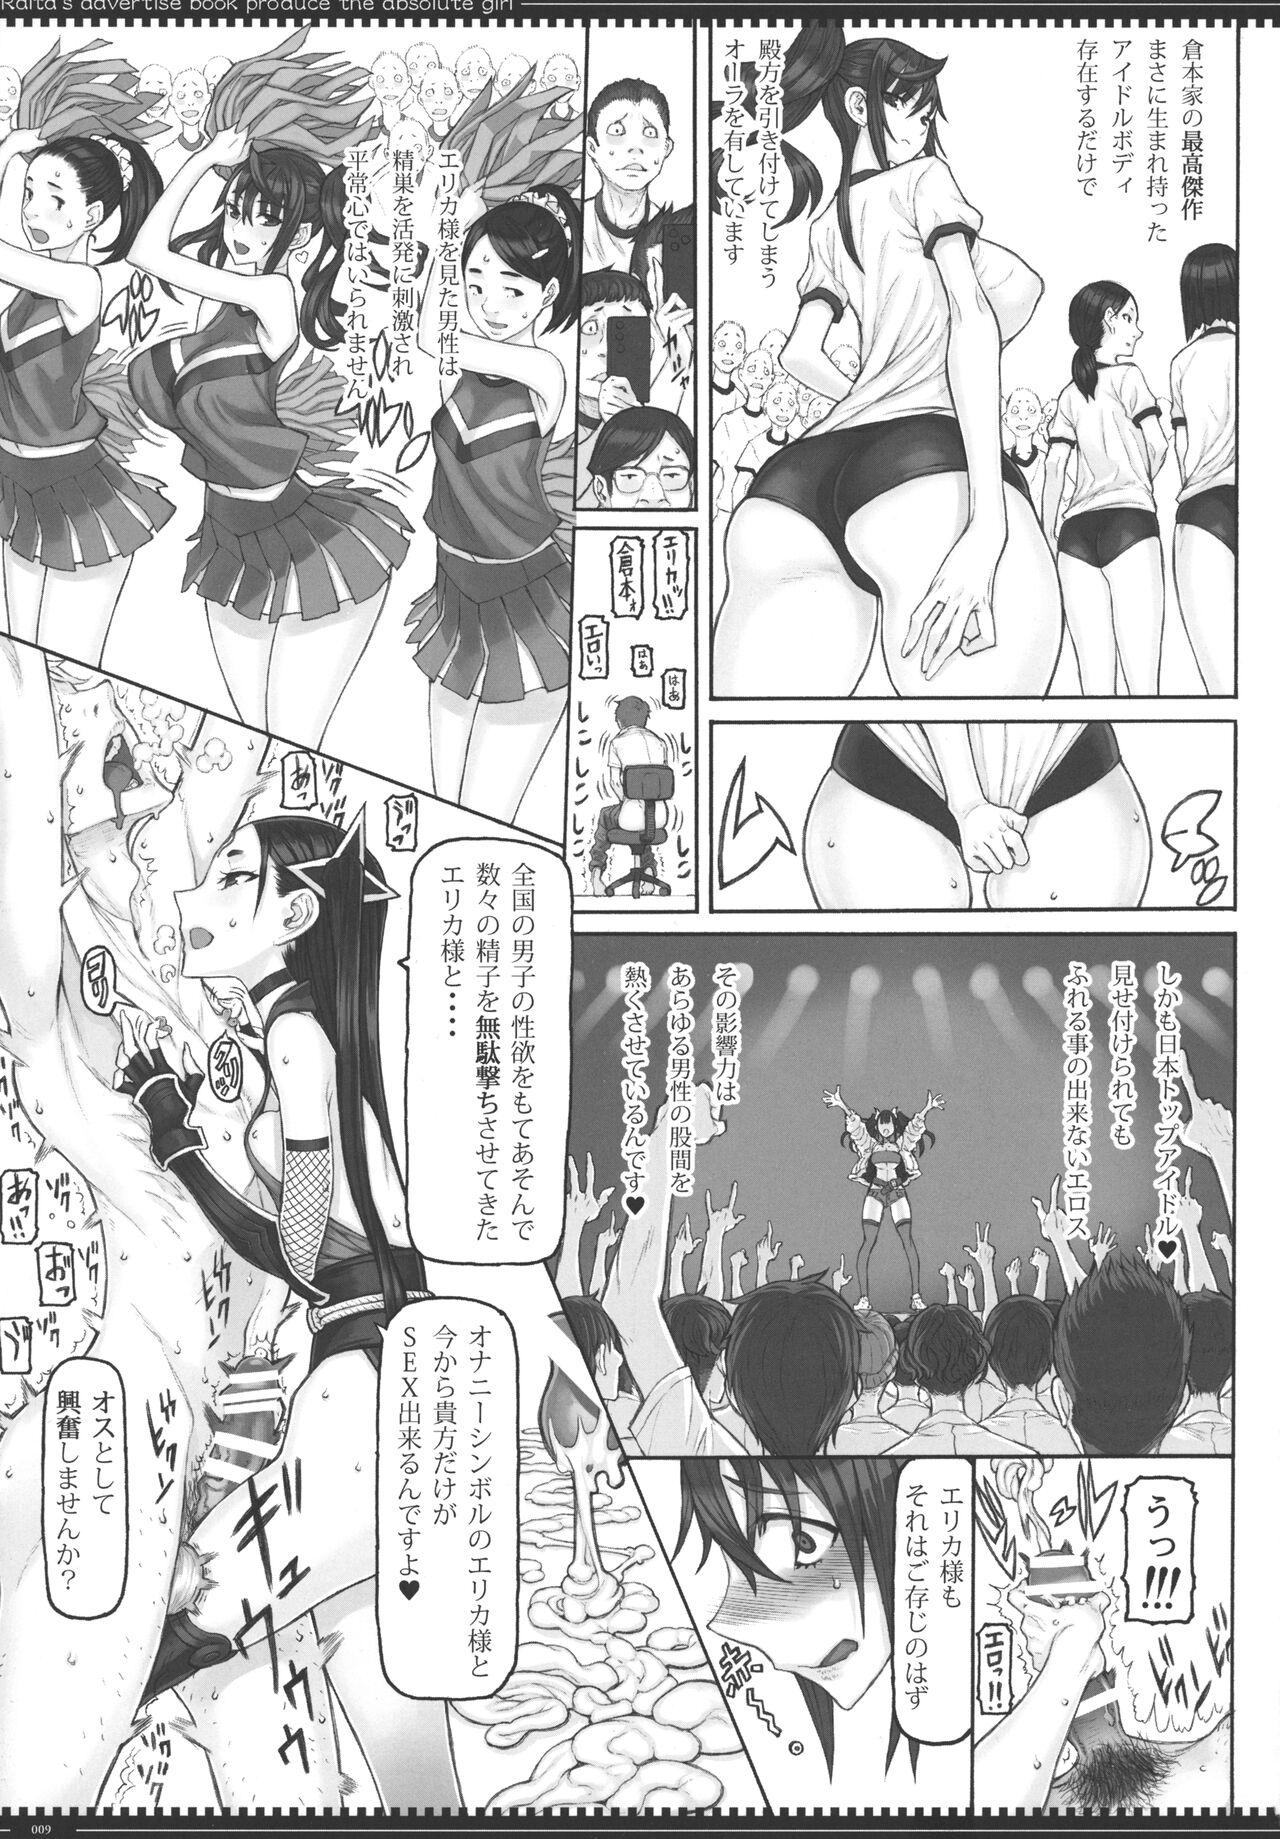 Slapping Mahou Shoujo 22.0 + C101 Kaijou Gentei Orihon - Zettai junpaku mahou shoujo Hot Women Having Sex - Page 8